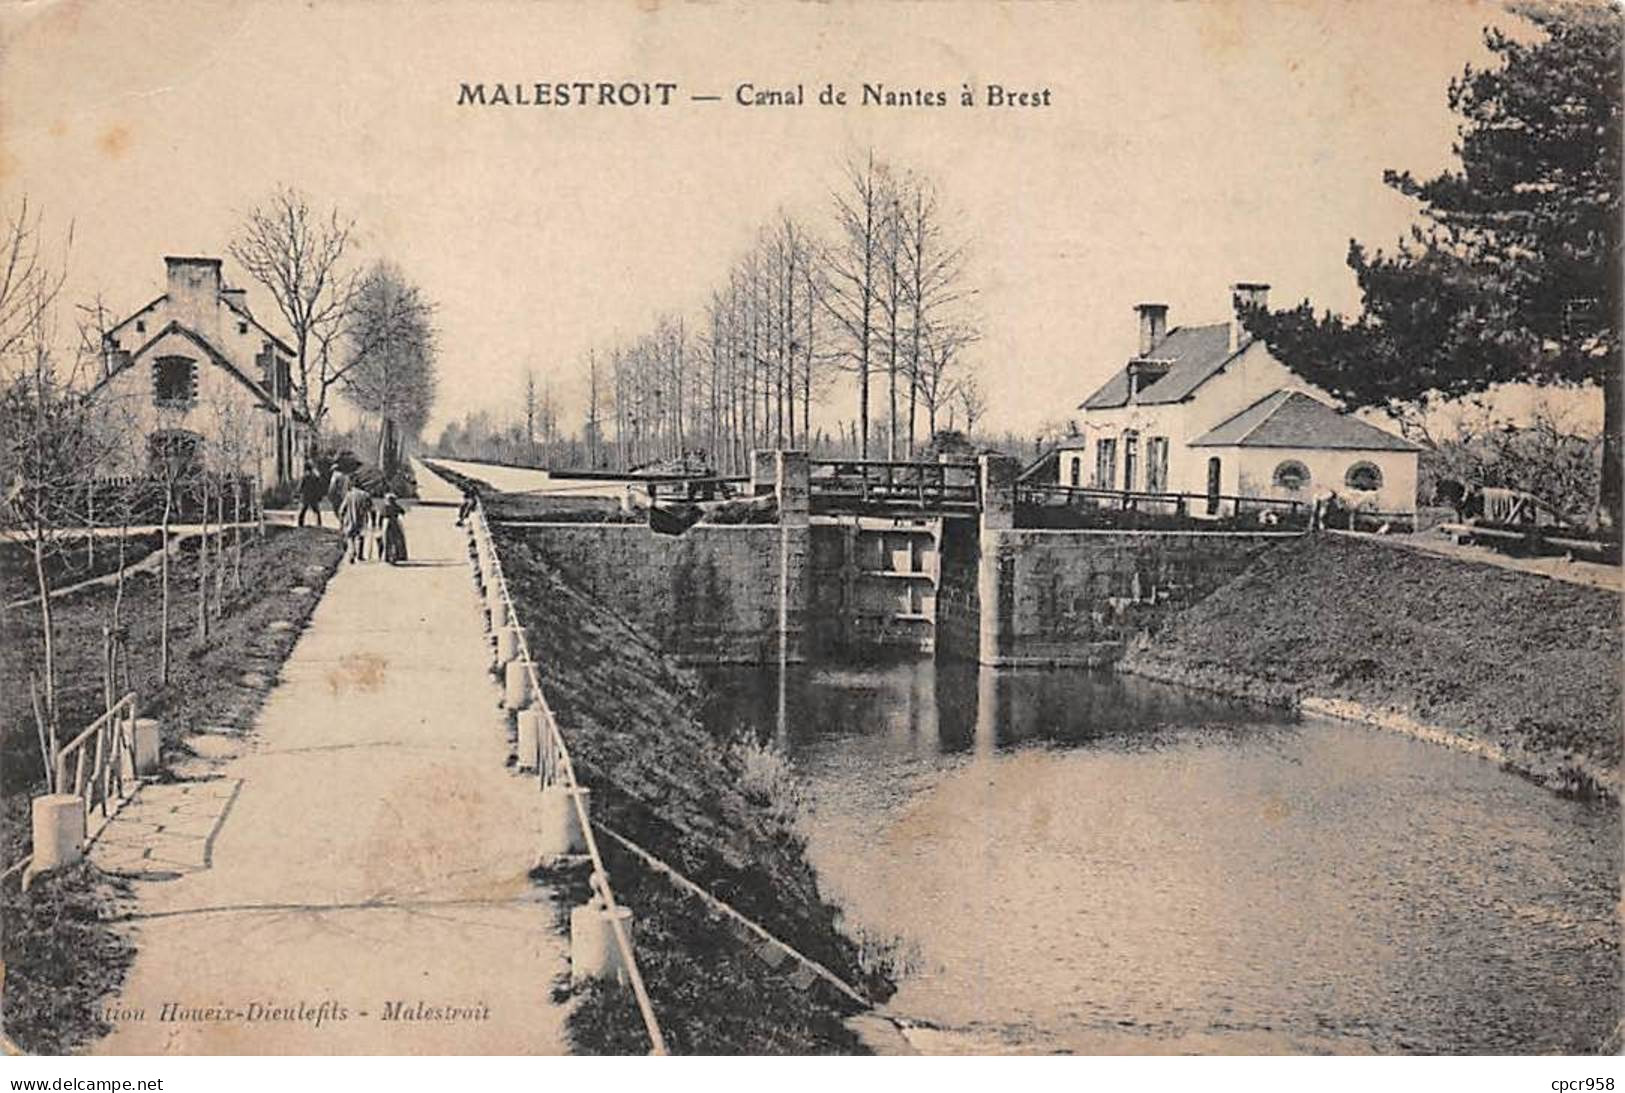 56.AM17270.Malestroit.Canal De Nantes à Brest - Malestroit